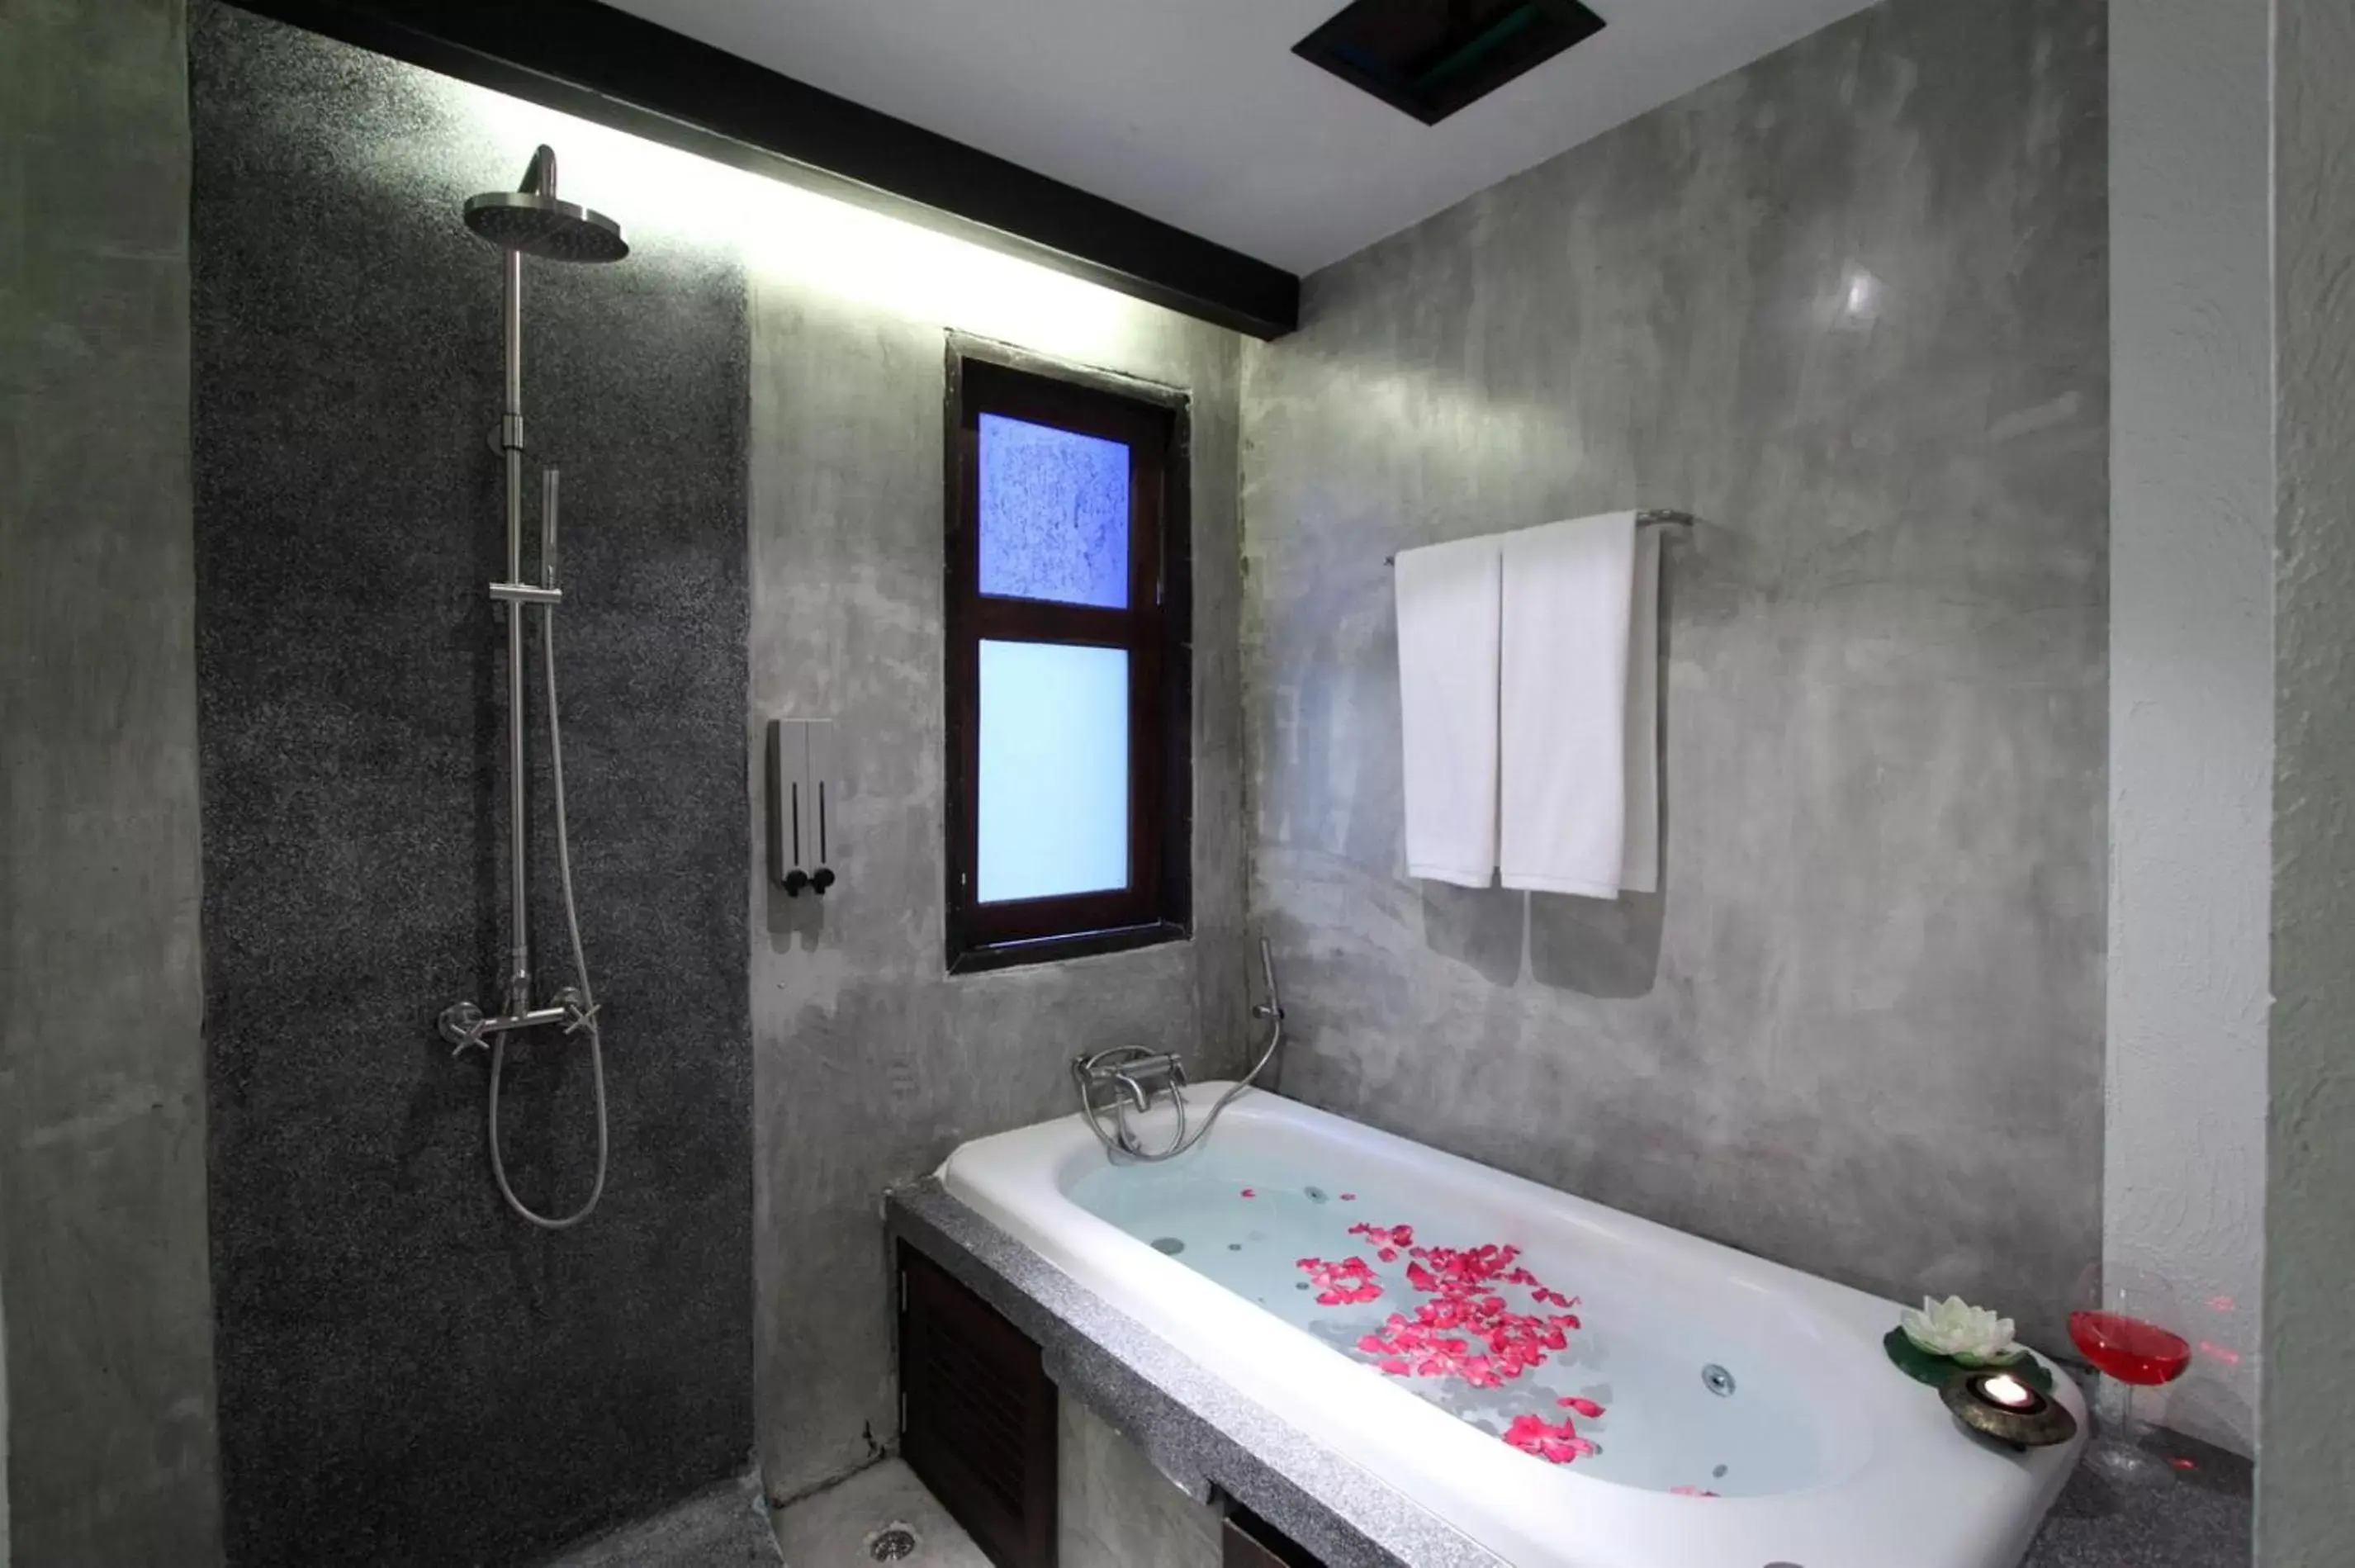 Bathroom in De Lanna Hotel